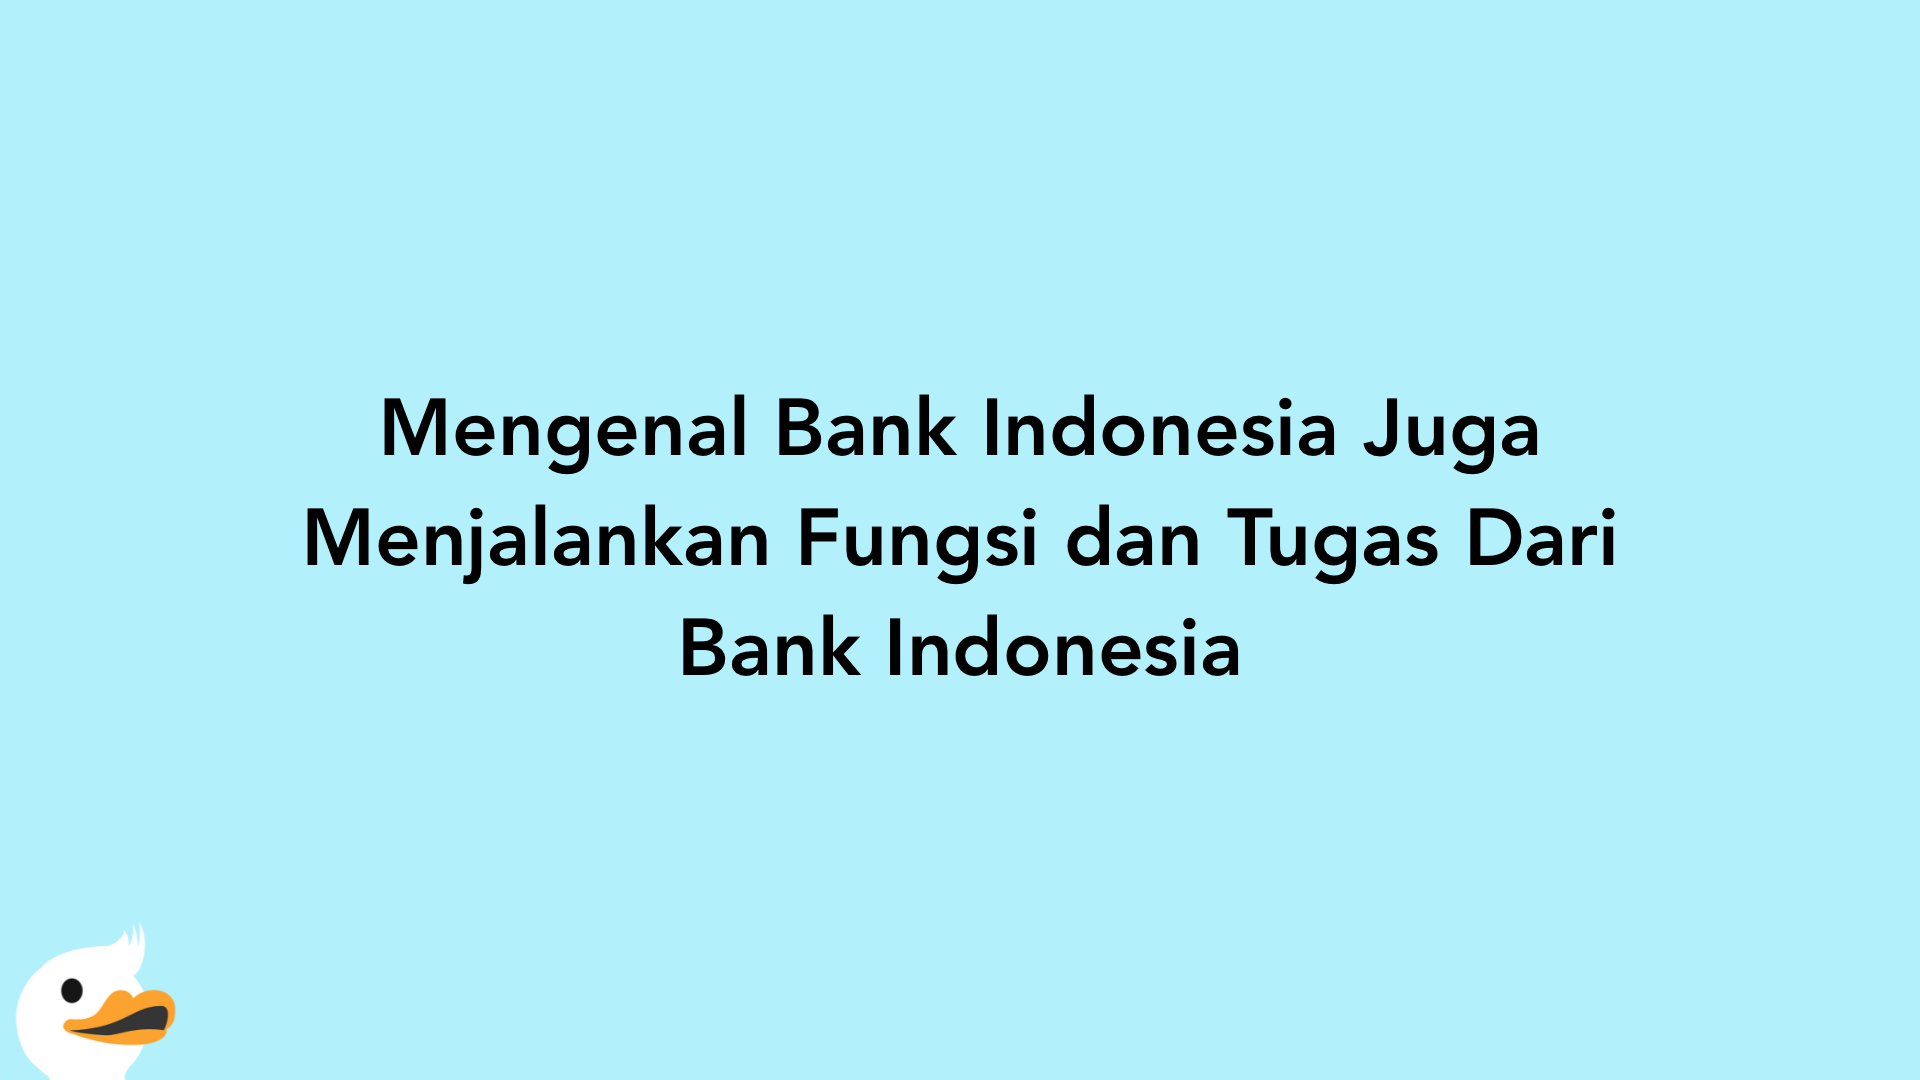 Mengenal Bank Indonesia Juga Menjalankan Fungsi dan Tugas Dari Bank Indonesia